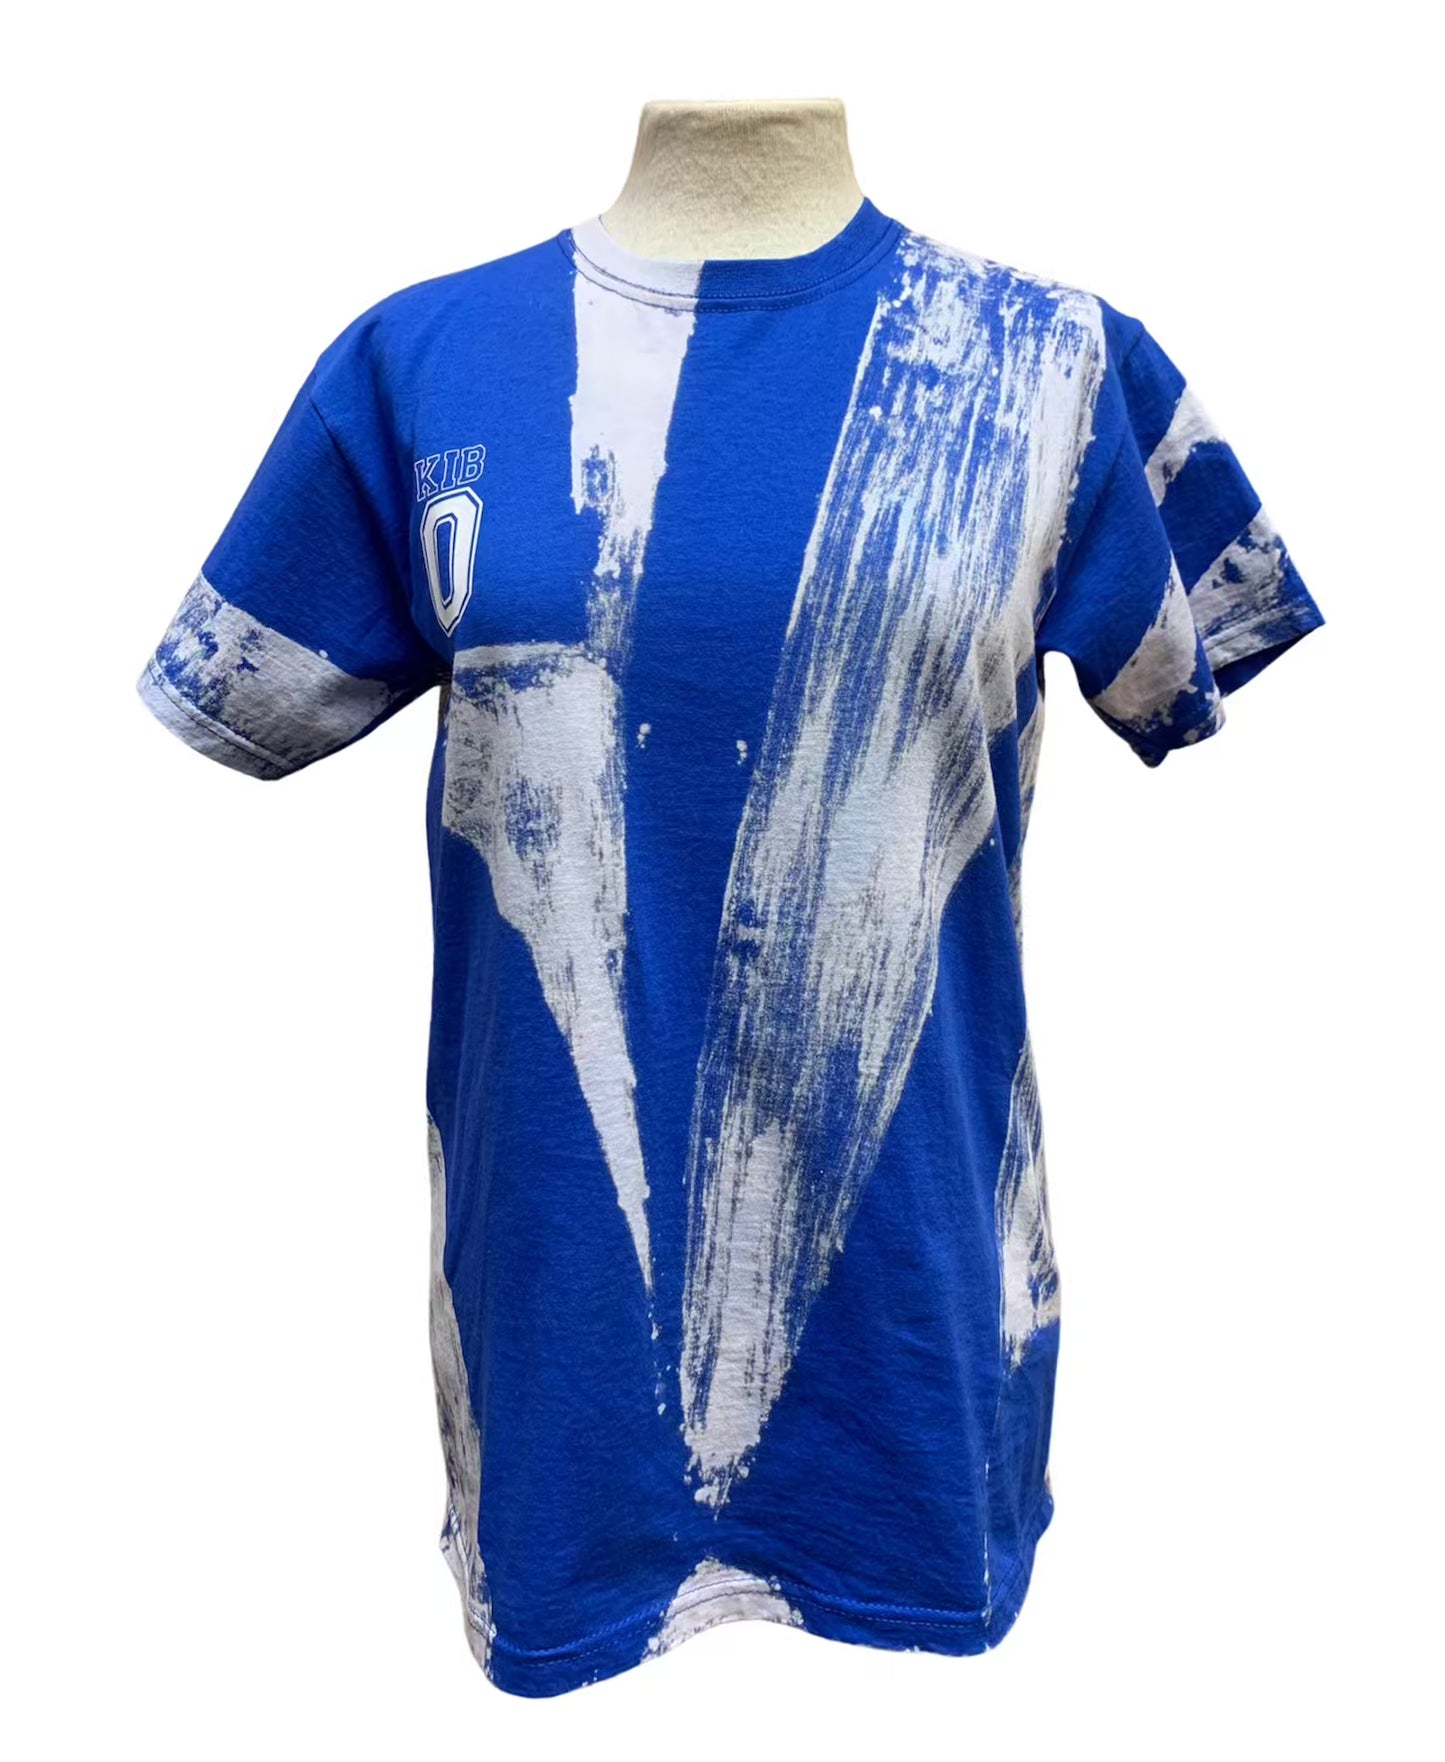 Partxis Blue S T-shirt